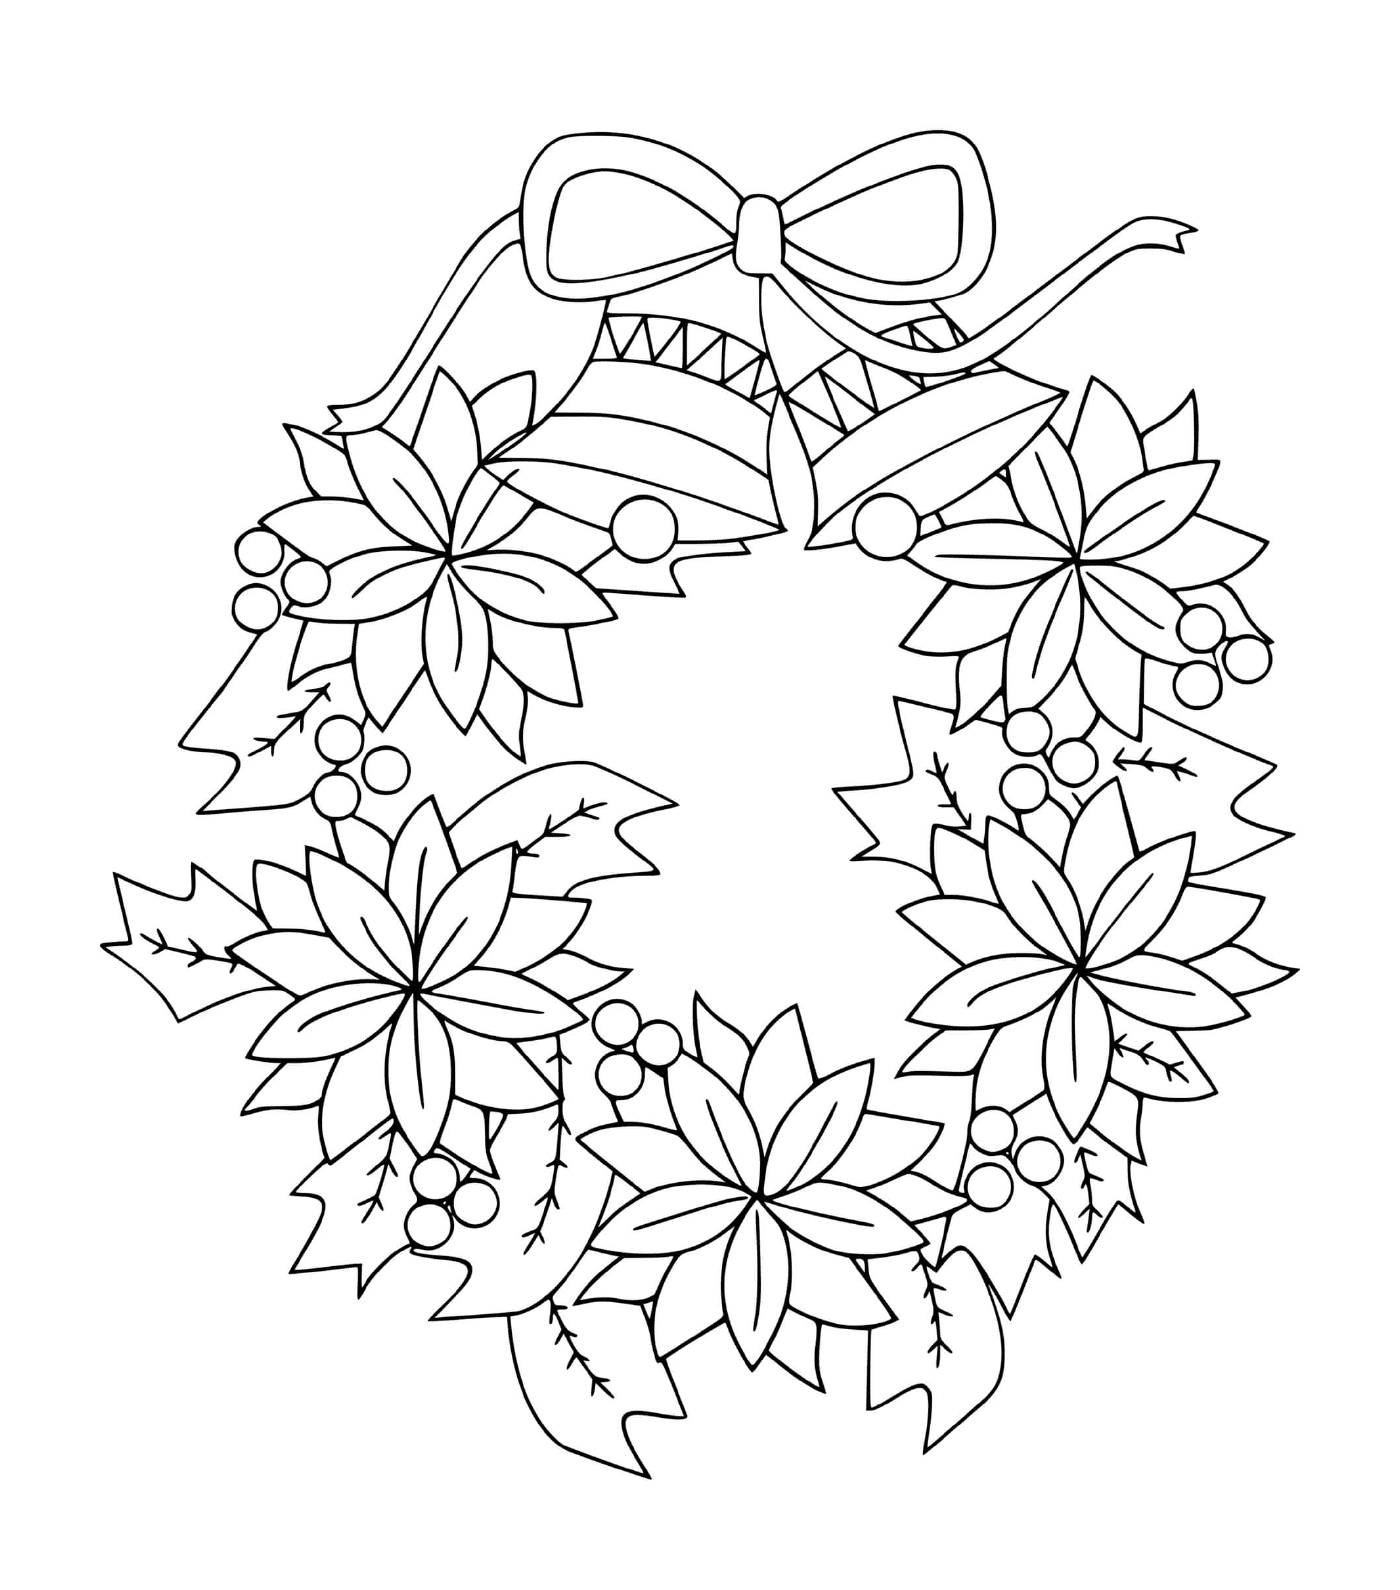 couronne de noel avec fleurs et cloches